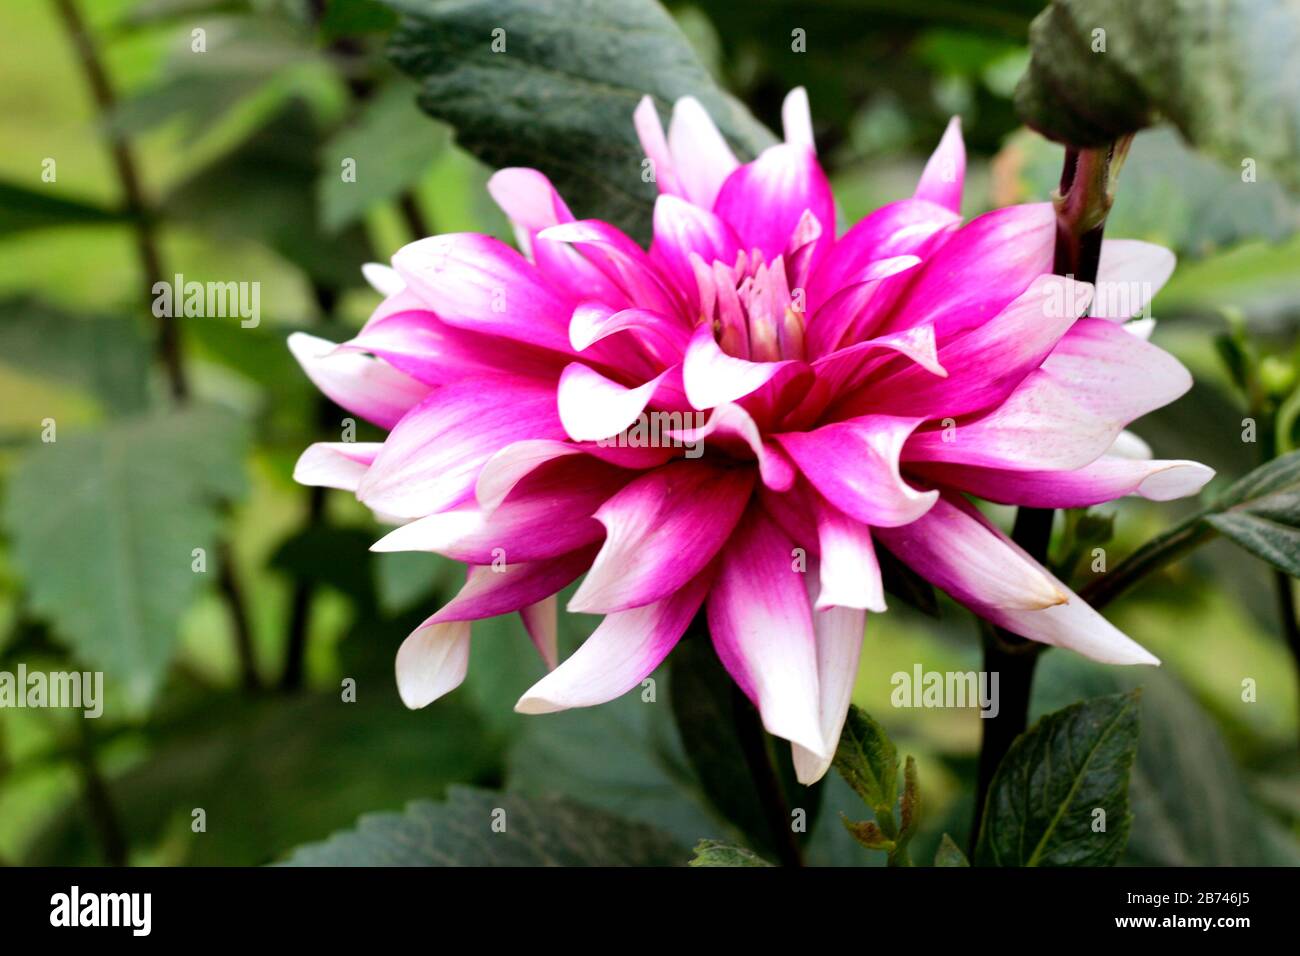 Imágenes de flores hd fotografías e imágenes de alta resolución - Alamy